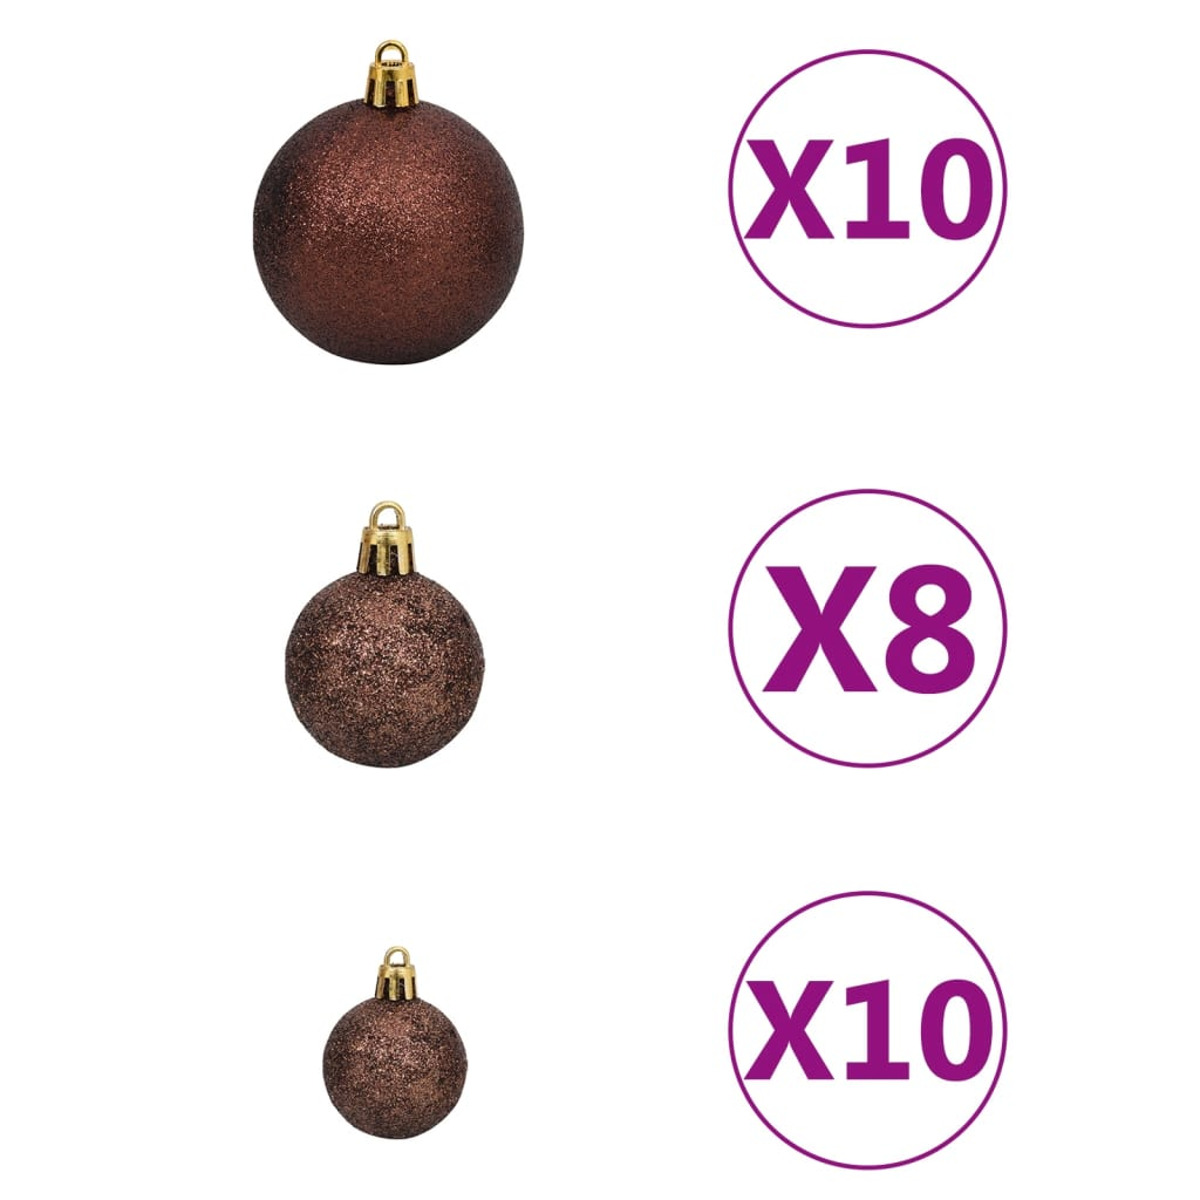 VIDAXL 3210372 Weihnachtsbaum